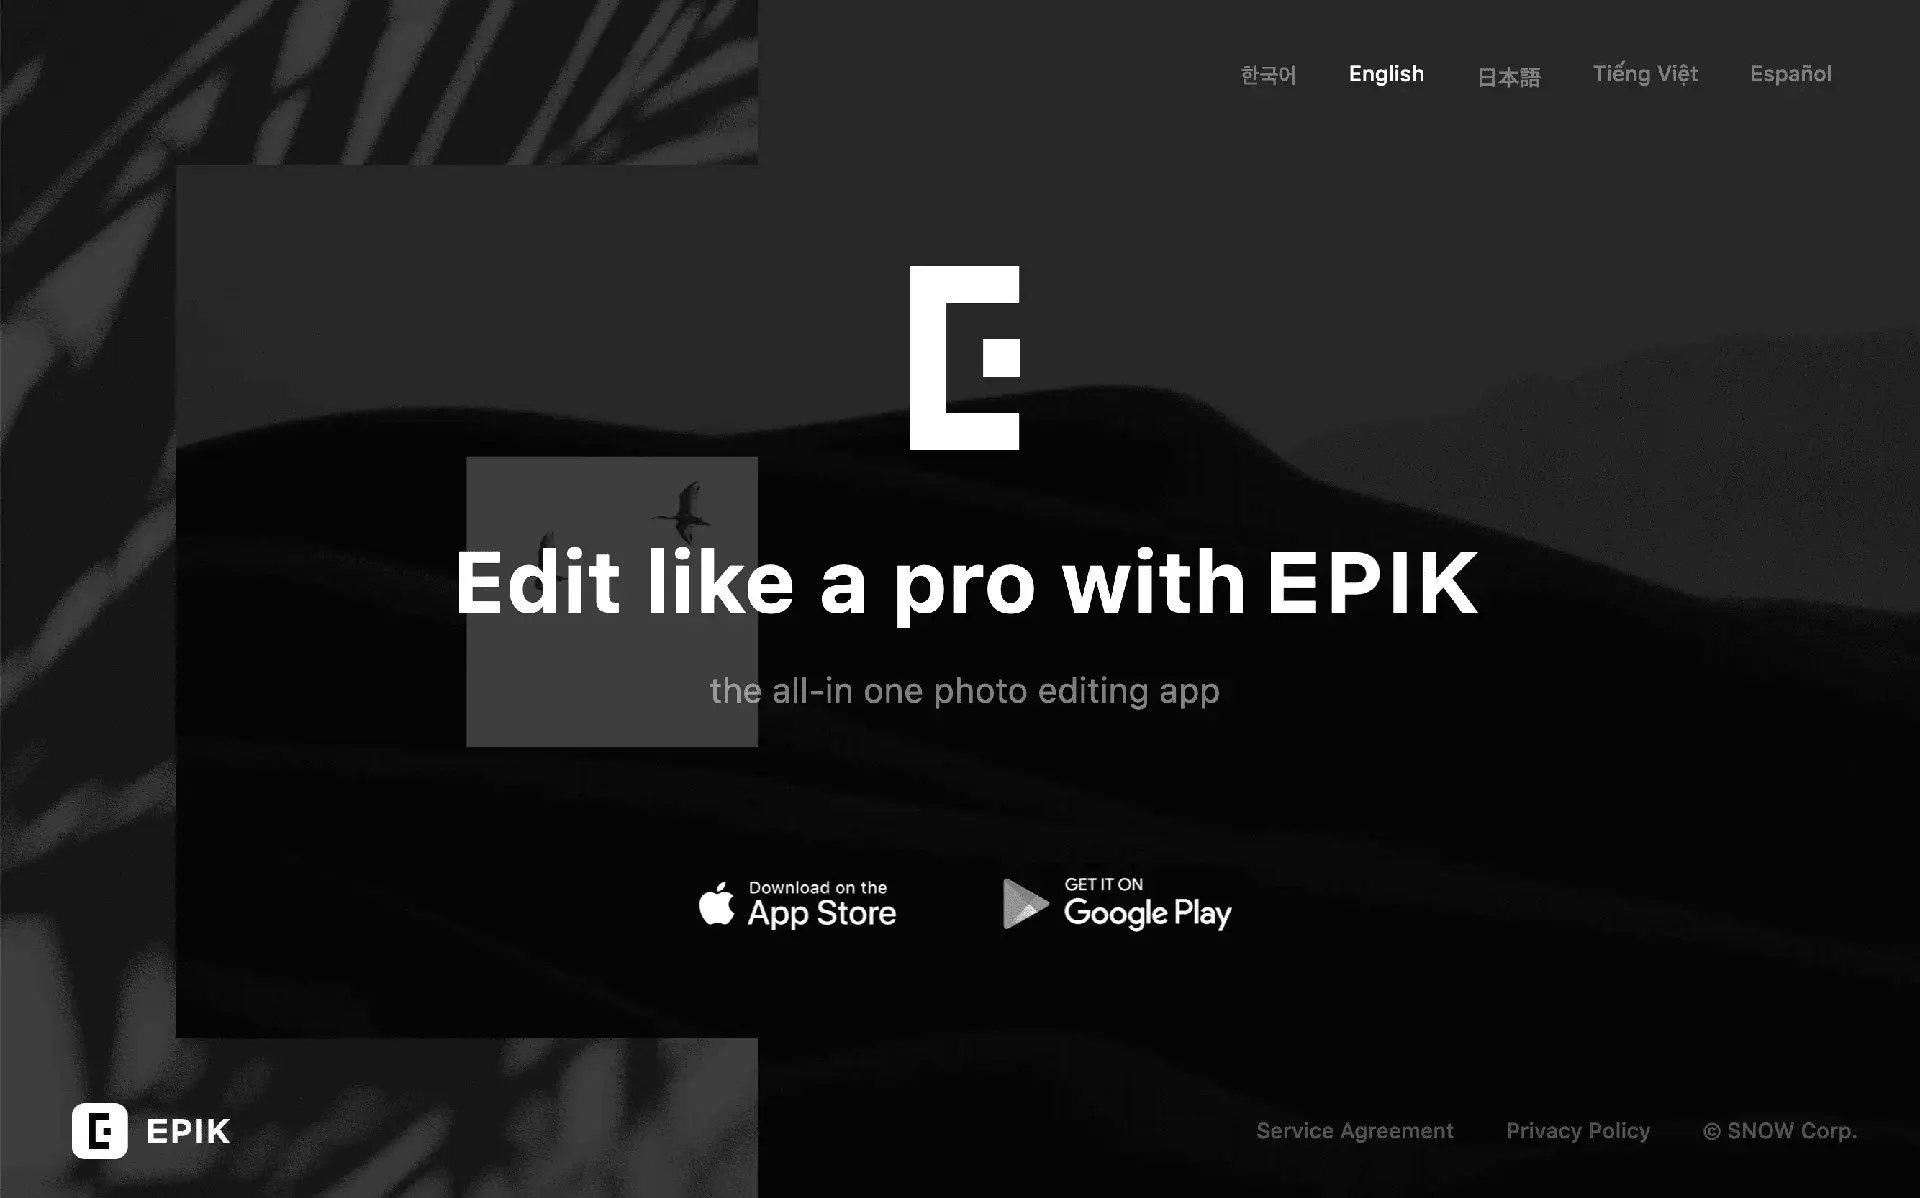 EPIKwebsite picture